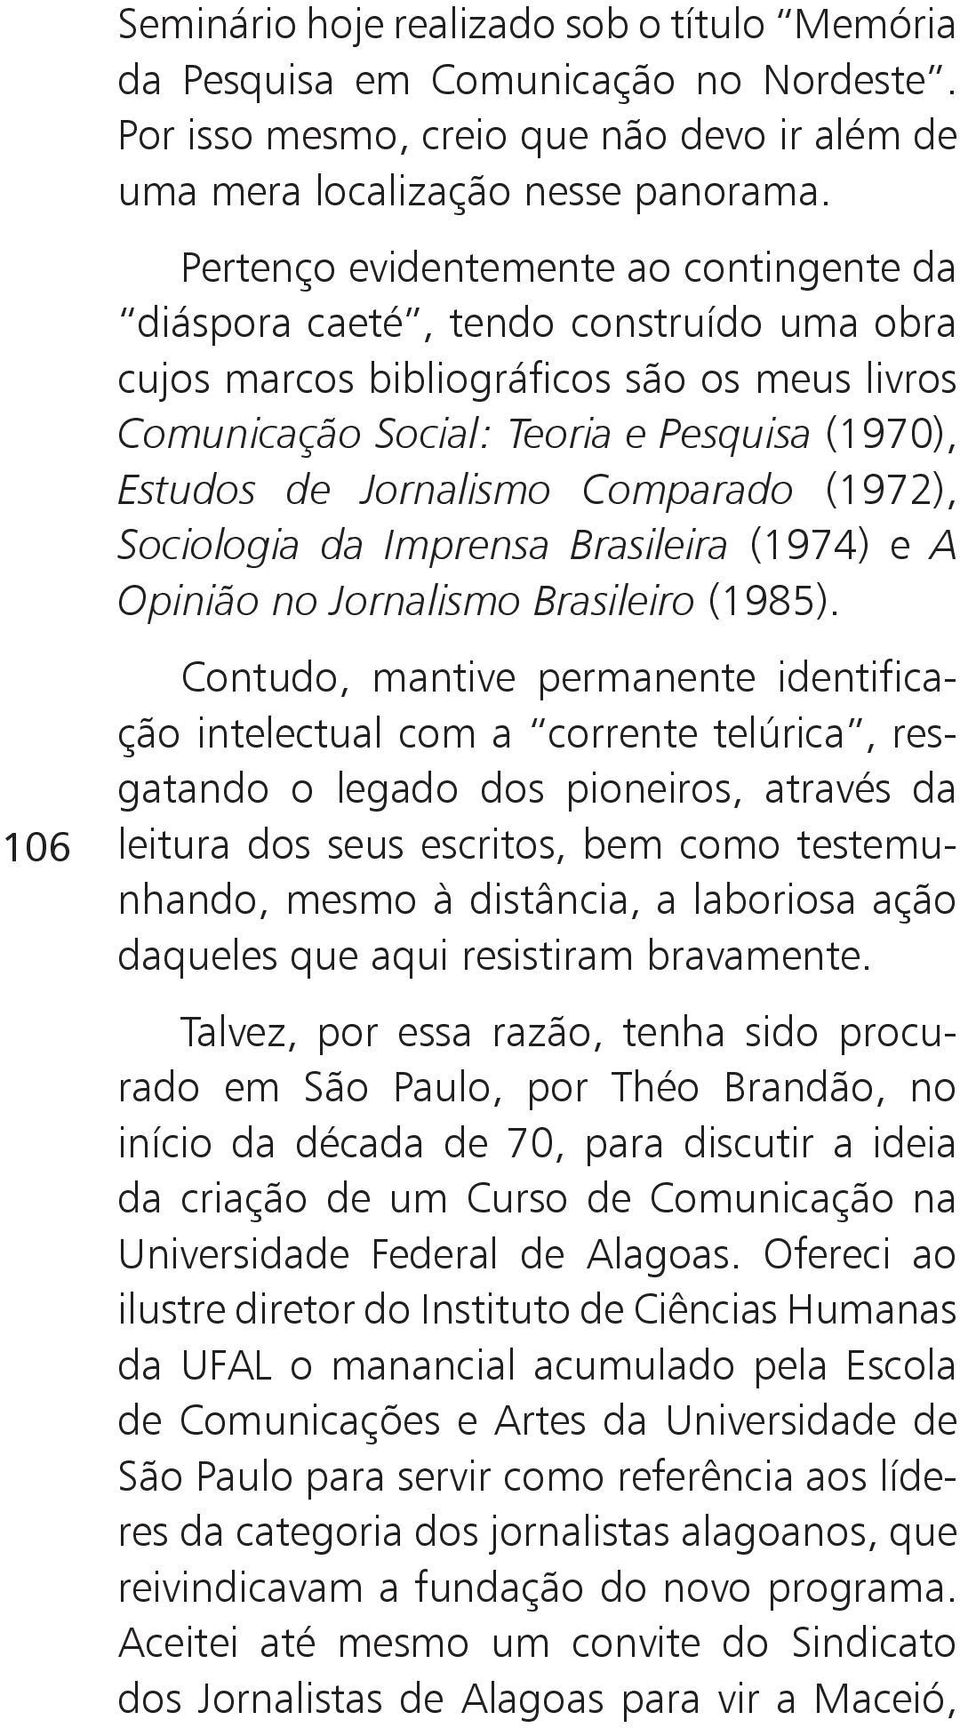 Comparado (1972), Sociologia da Imprensa Brasileira (1974) e A Opinião no Jornalismo Brasileiro (1985).